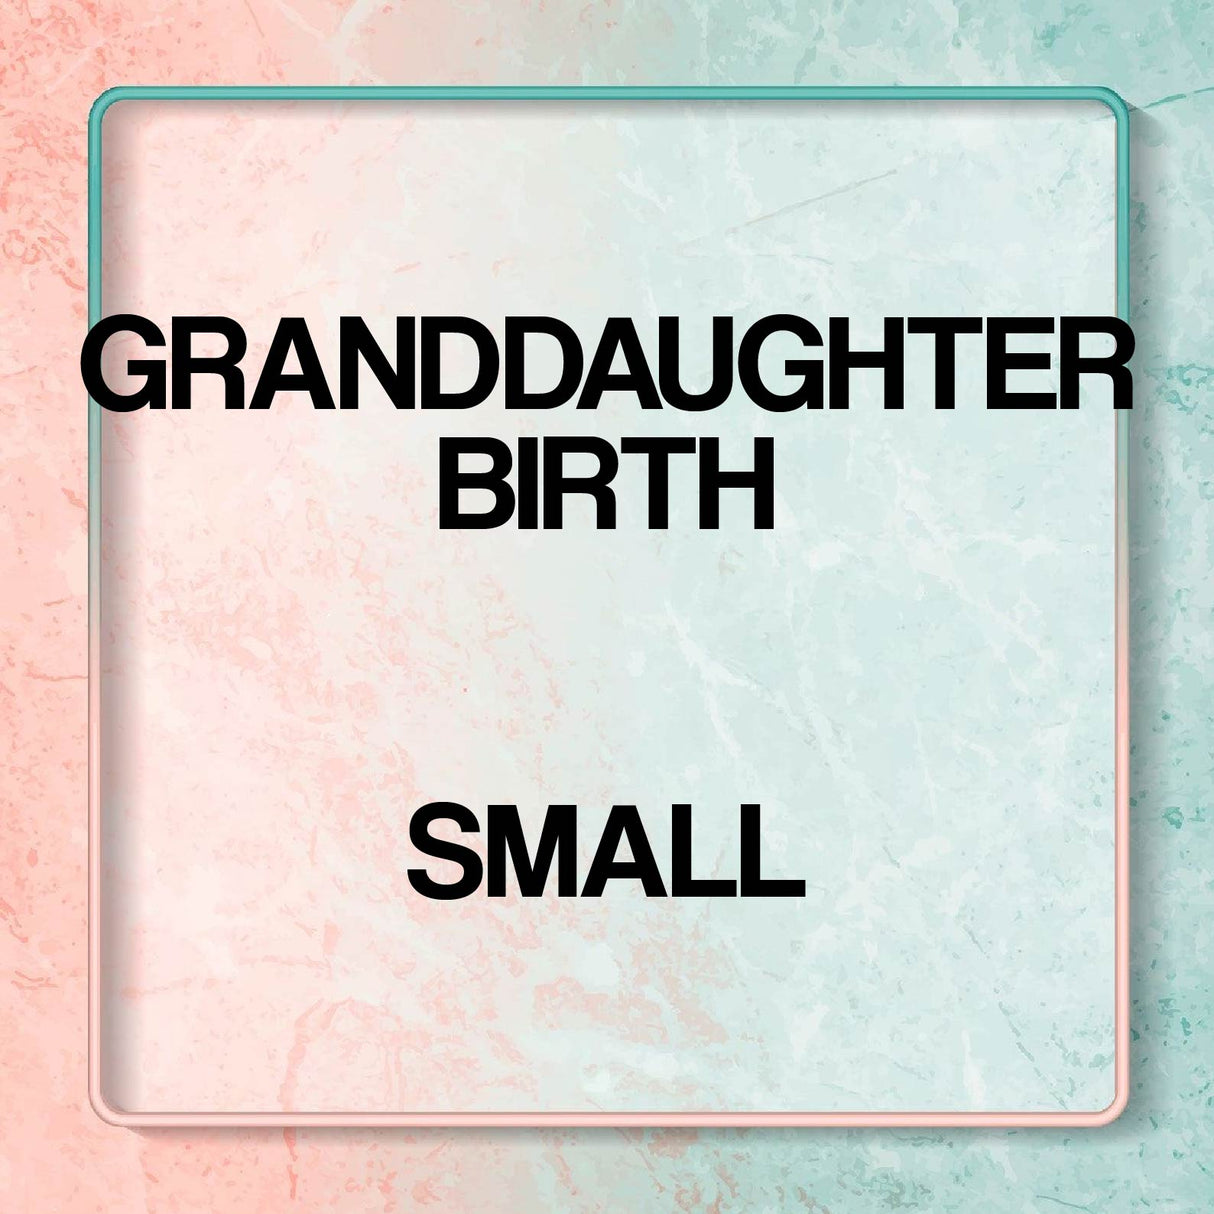 Baby Granddaughter Birth